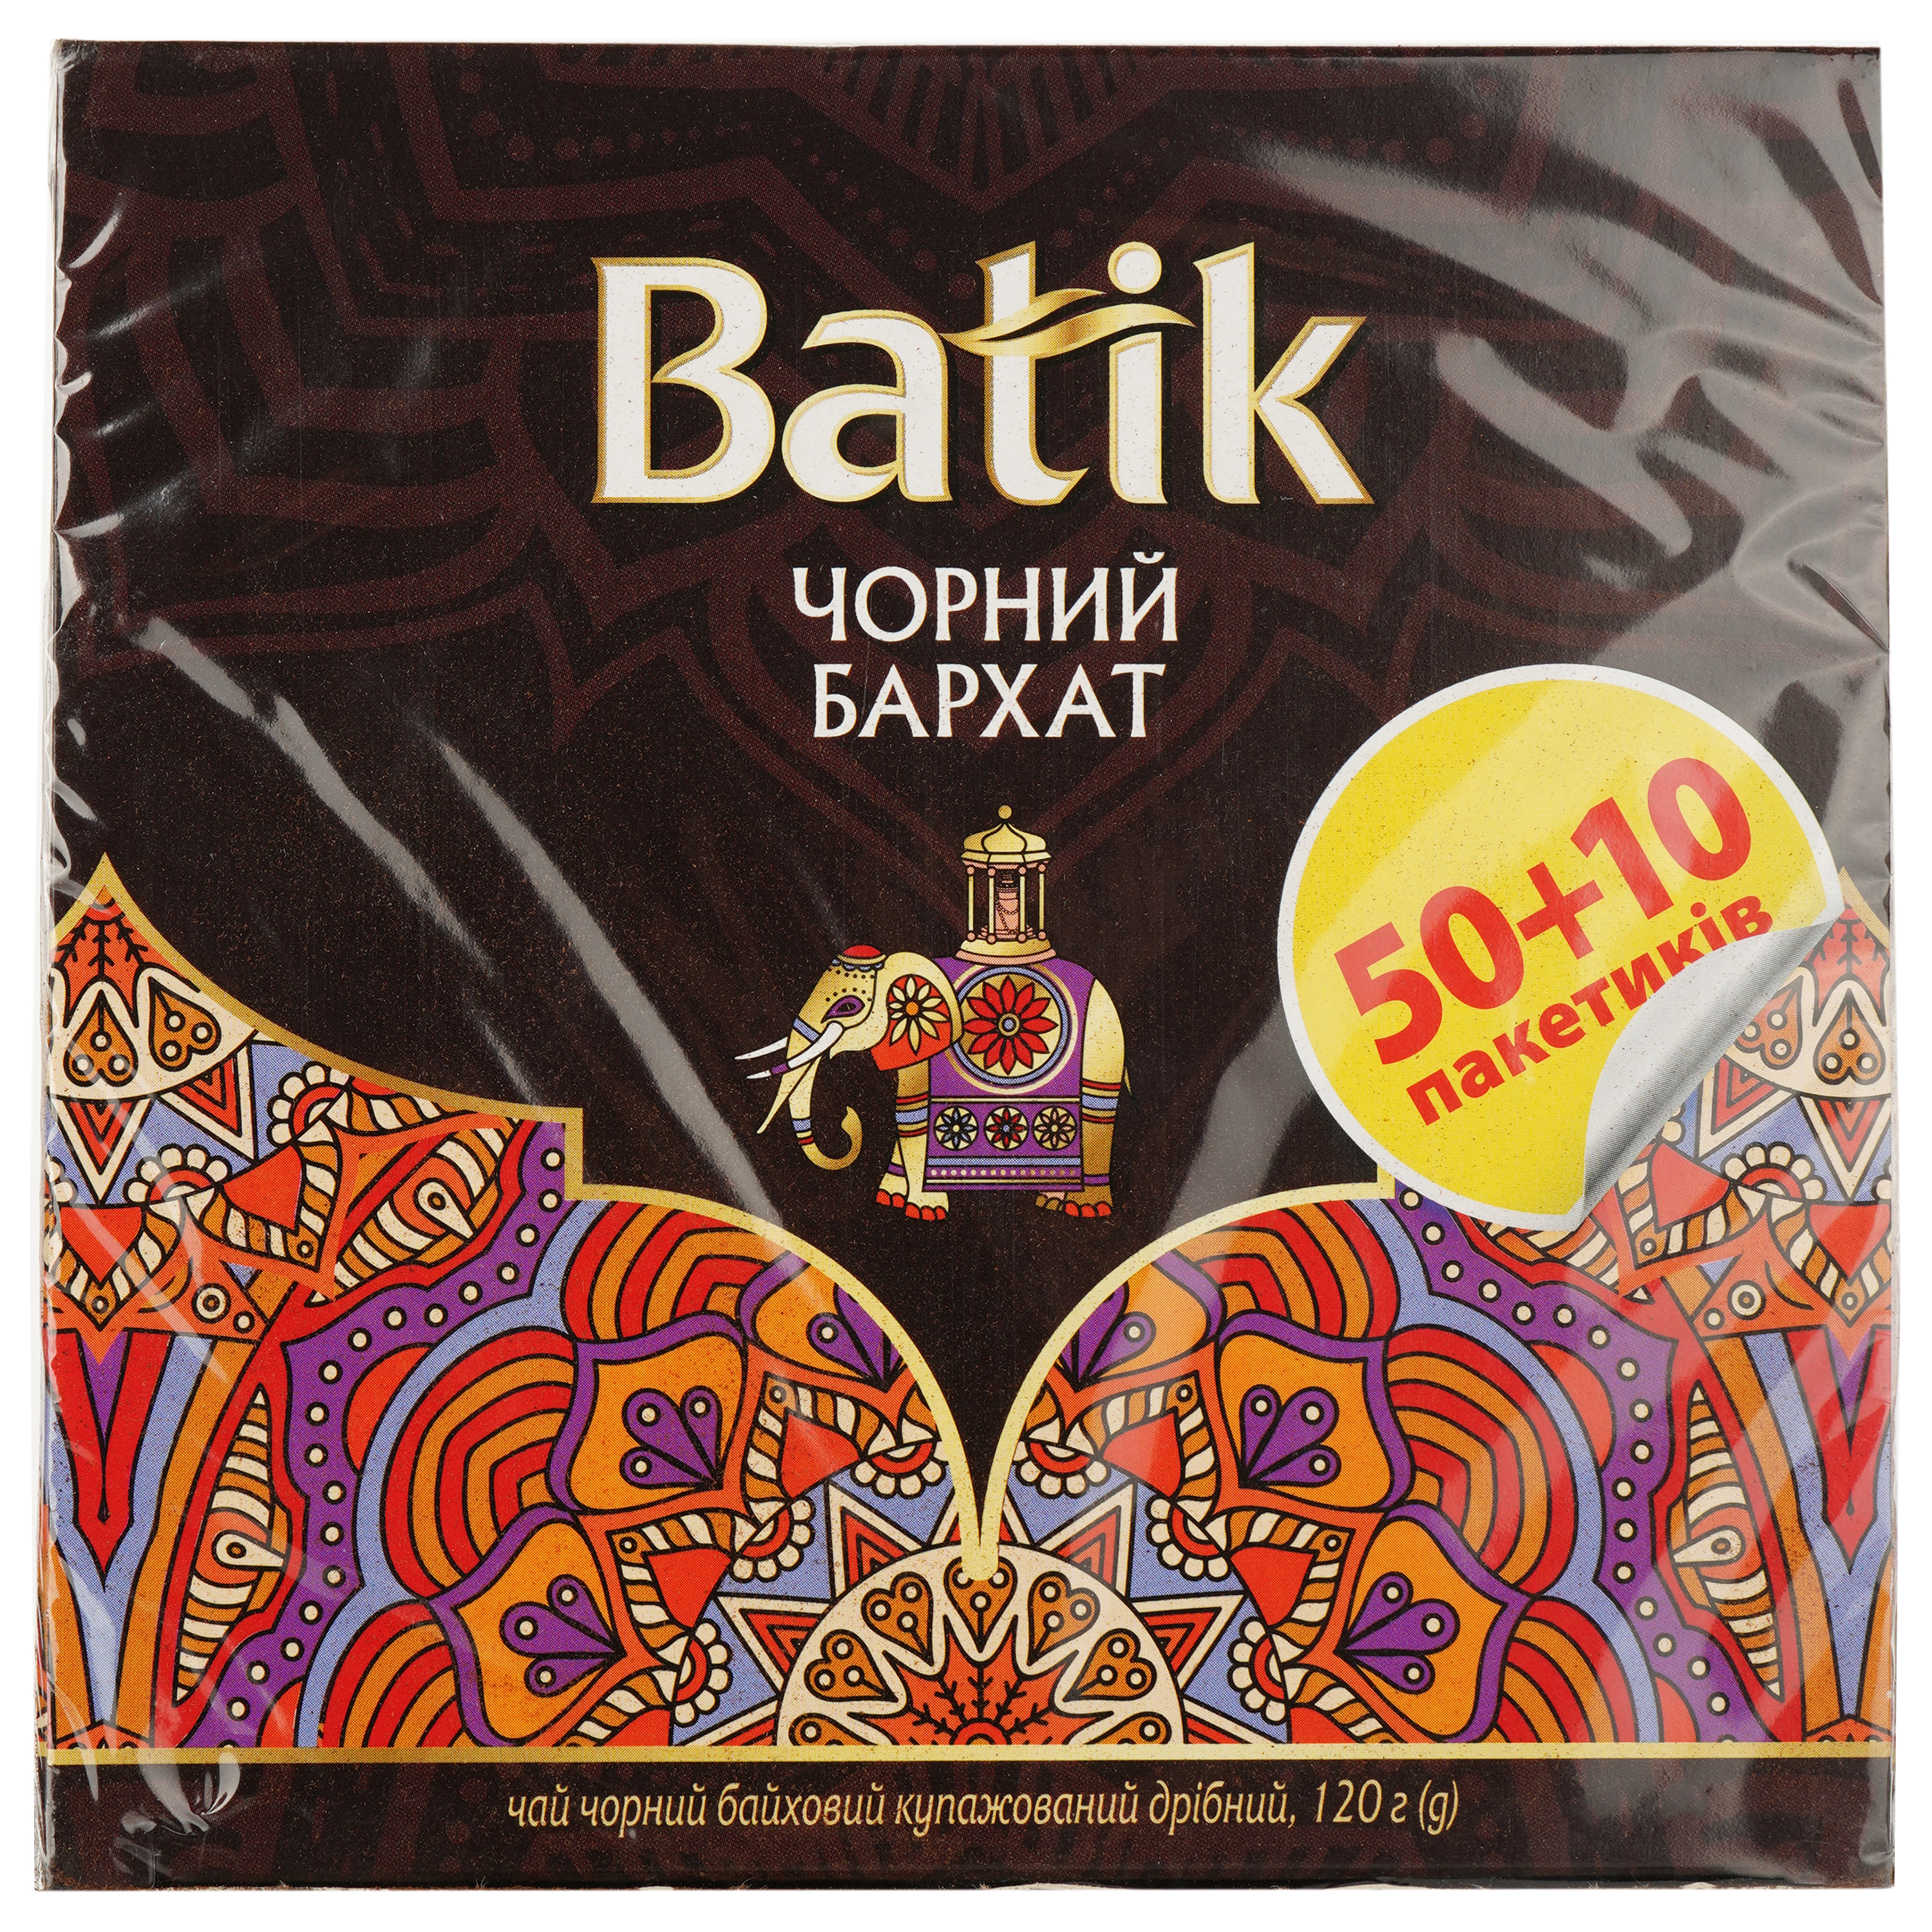 Чай чорний Batik Чорний бархат купажований, дрібний, 50+10 шт. - фото 1